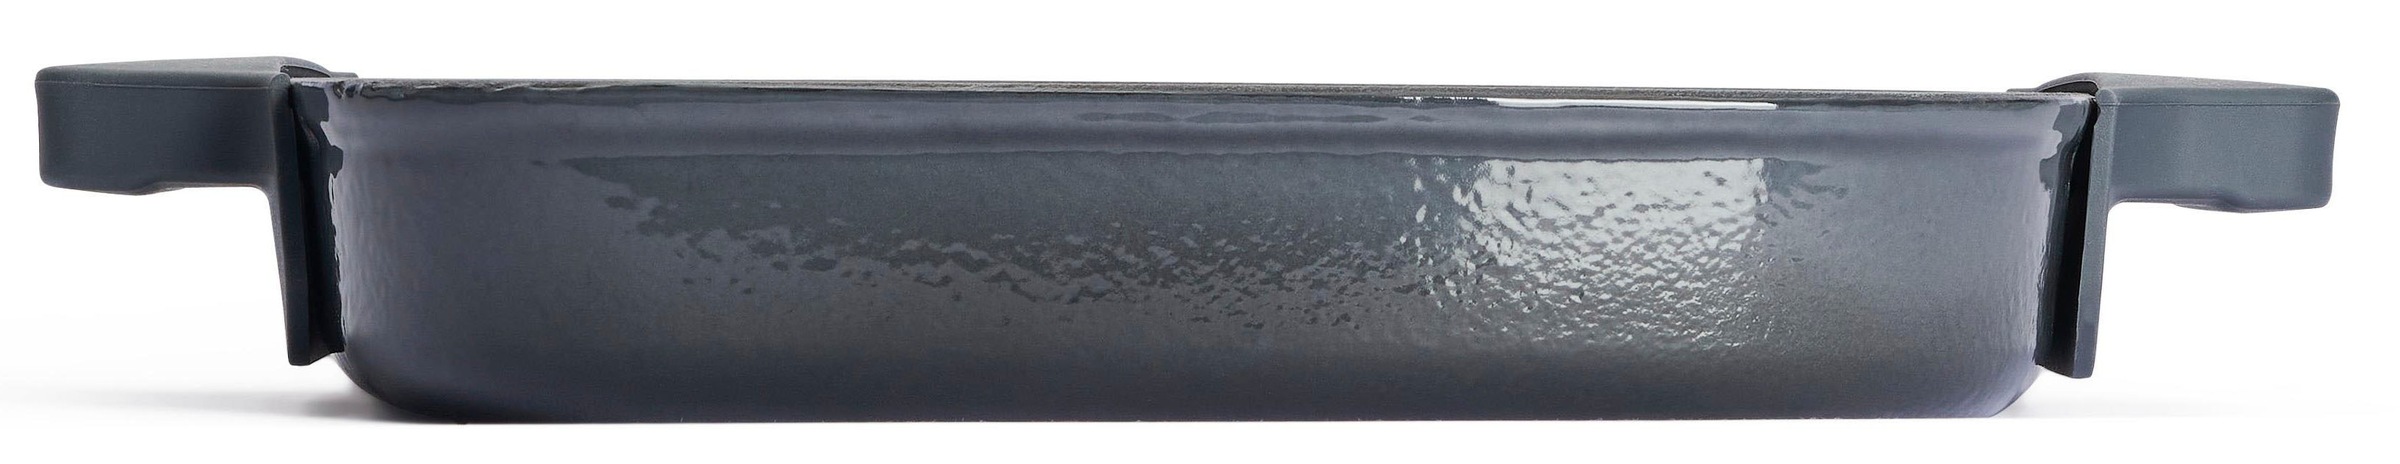 WOLL Grillpfanne »Iron«, Gusseisen, (1 tlg.), 24x24 cm, Induktion